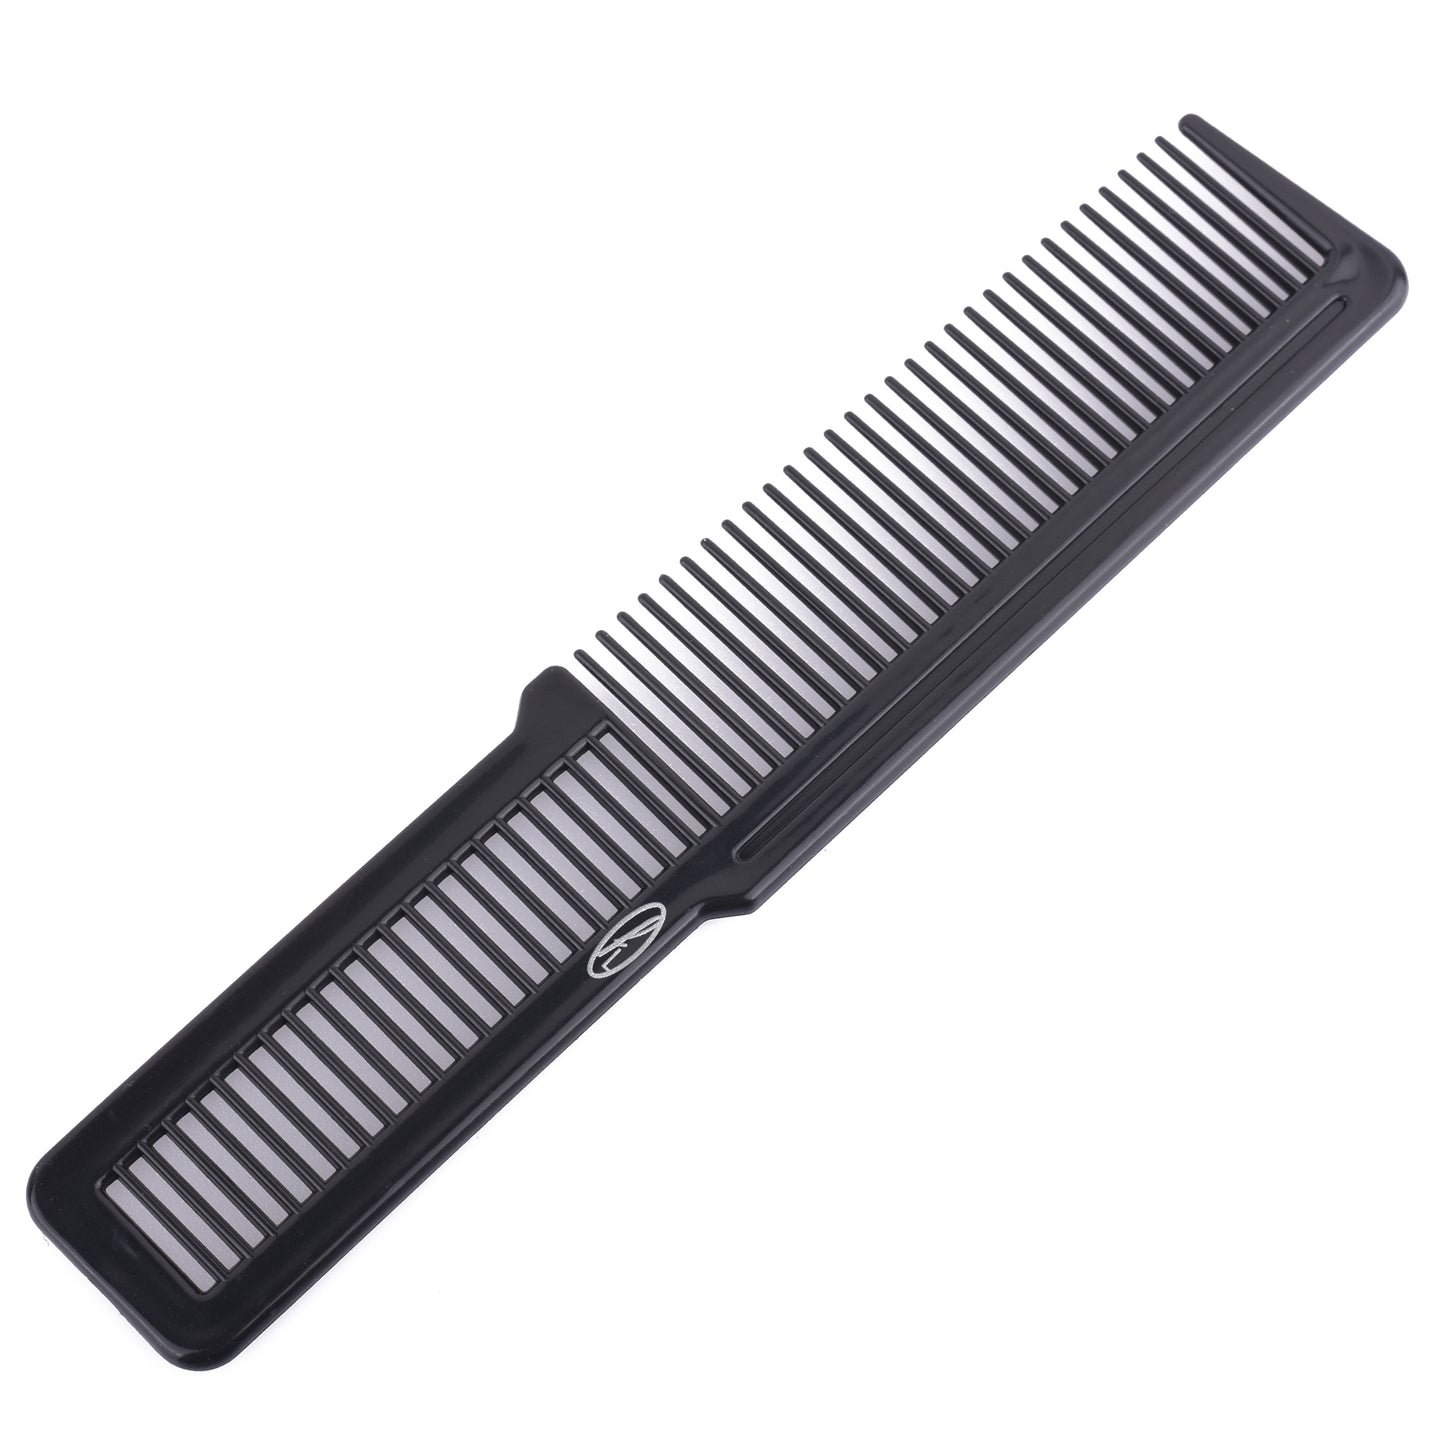 Barber comb Professional barber comb Styling barber comb Haircutting comb Barber cutting comb Classic barber comb Heat-resistant barber comb Barber comb set Carbon barber comb Anti-static barber comb